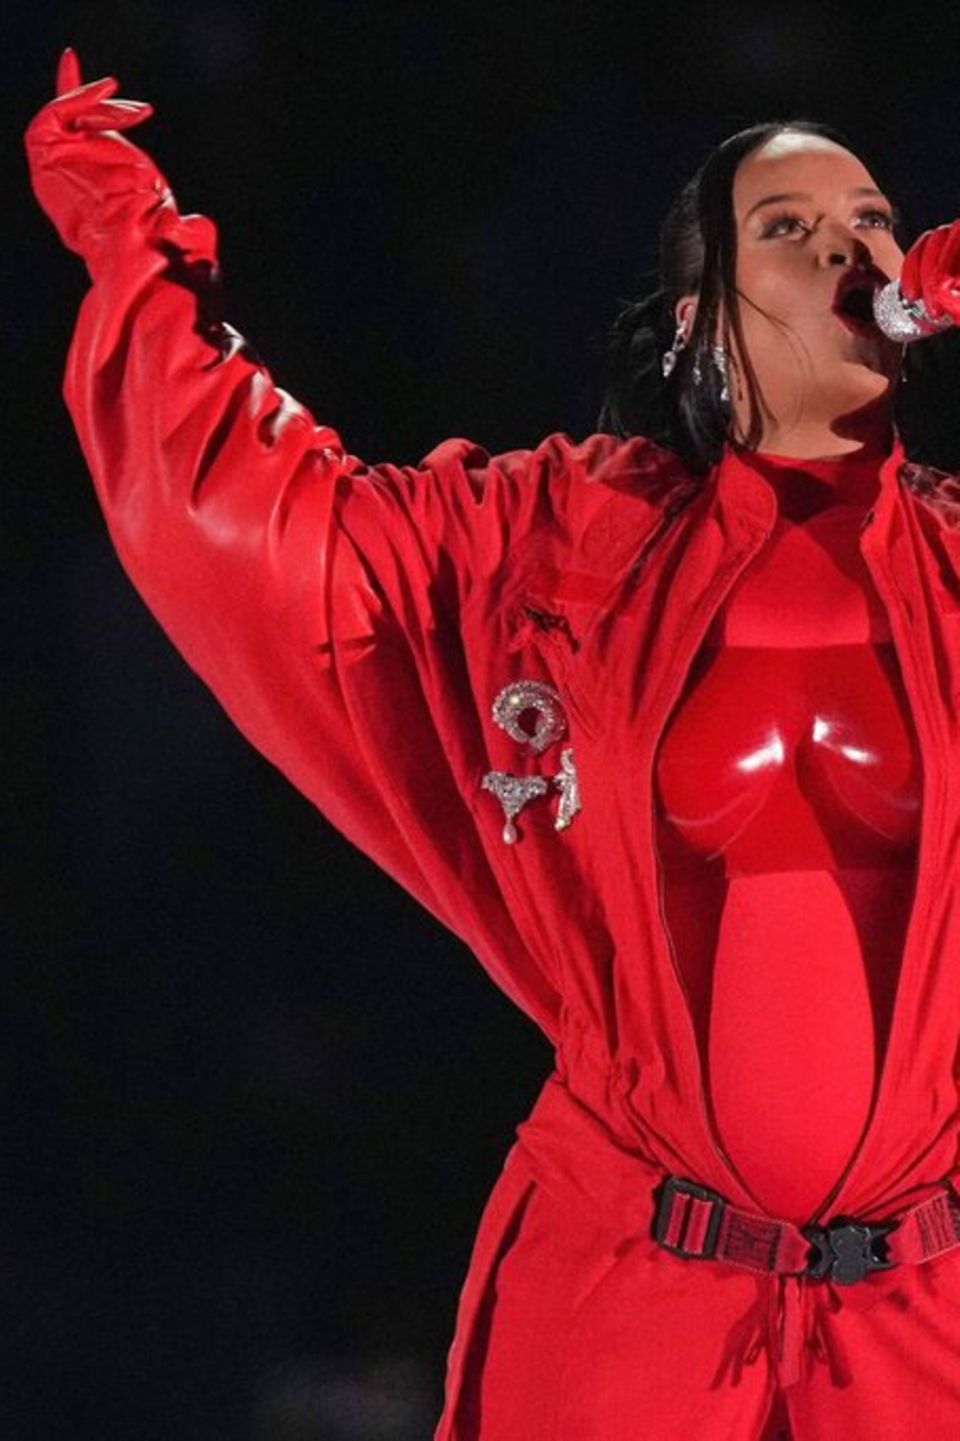 Ikonischer Auftritt beim Super Bowl: US-Sängerin Rihanna mit Babybauch.